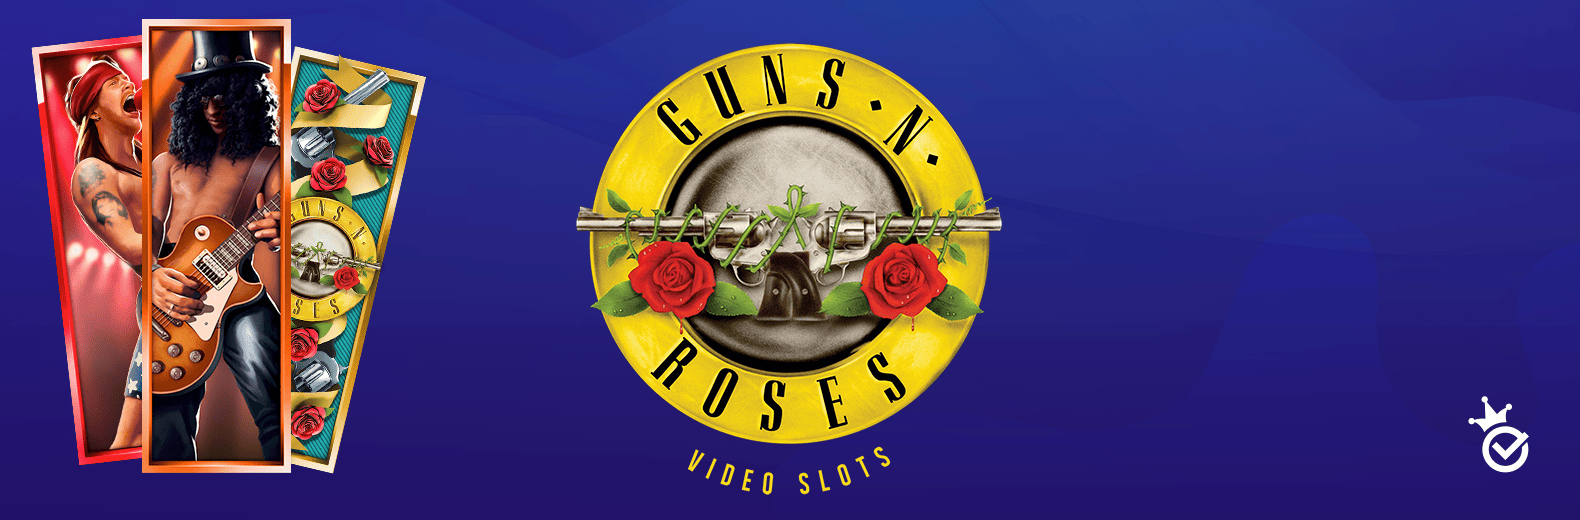 Guns N Roses hedelmäpeli|Guns n roses hedelmäpeli